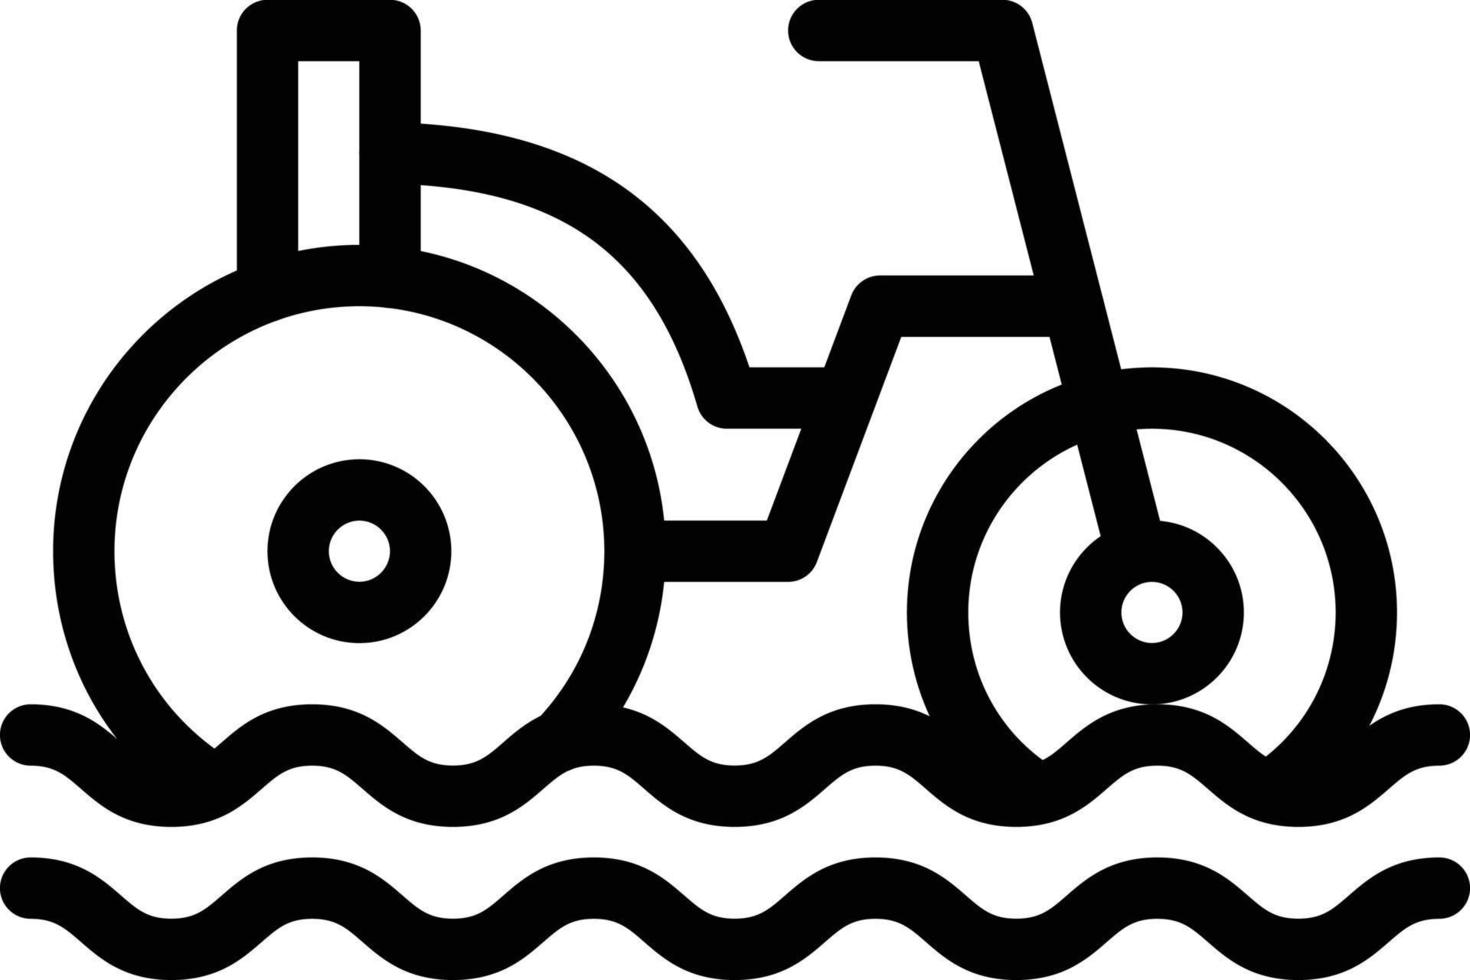 ciclismo ilustração vetorial de água em um icons.vector de qualidade background.premium para conceito e design gráfico. vetor